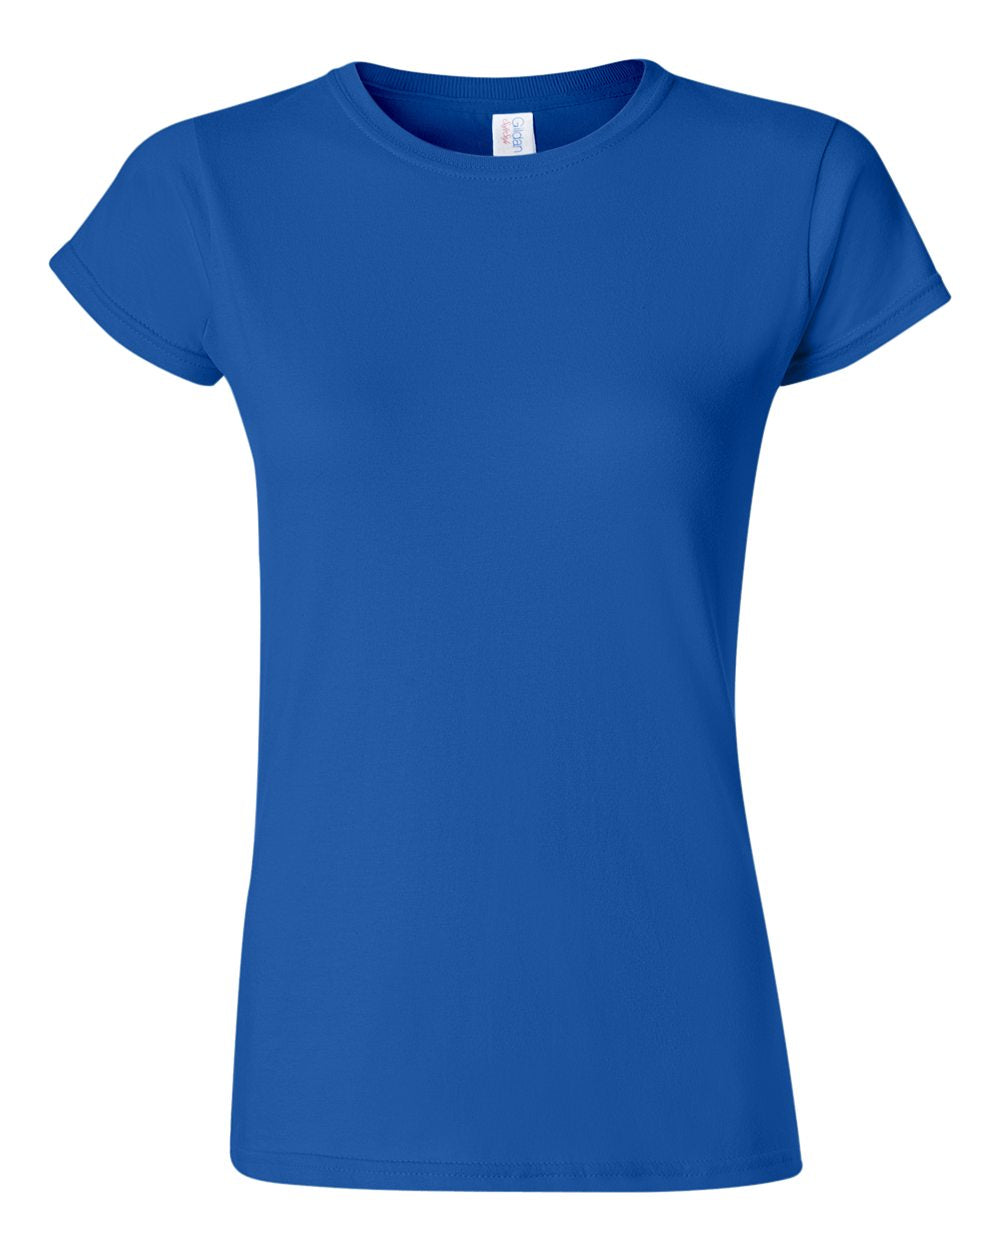 Gildan Softstyle Women's T-Shirt